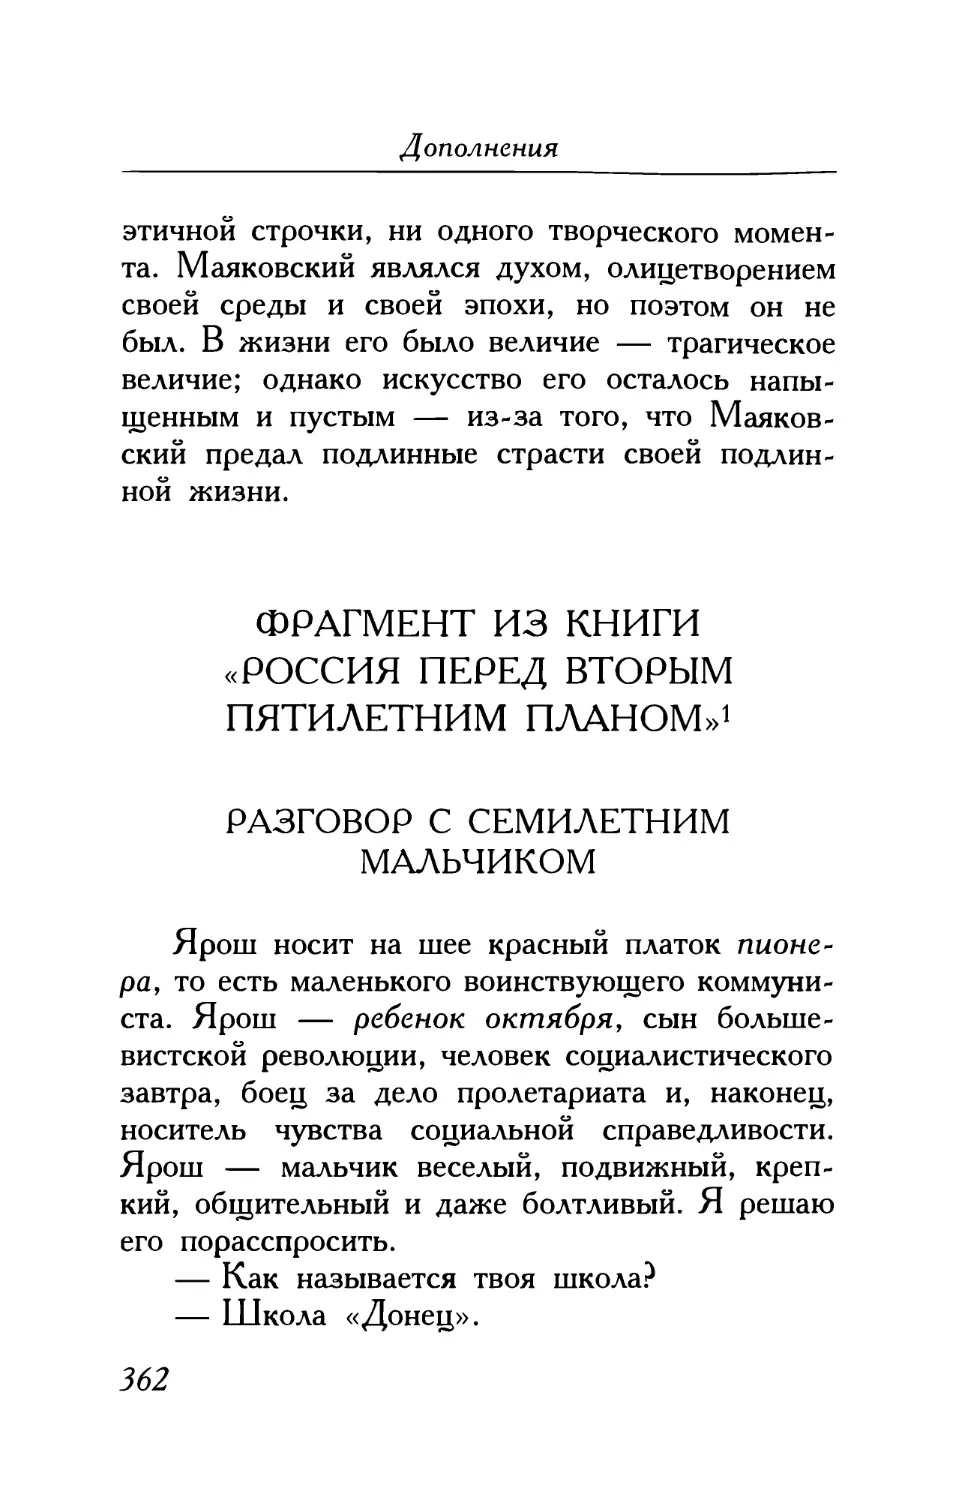 Фрагмент из книги «Россия перед вторым пятилетним планом»